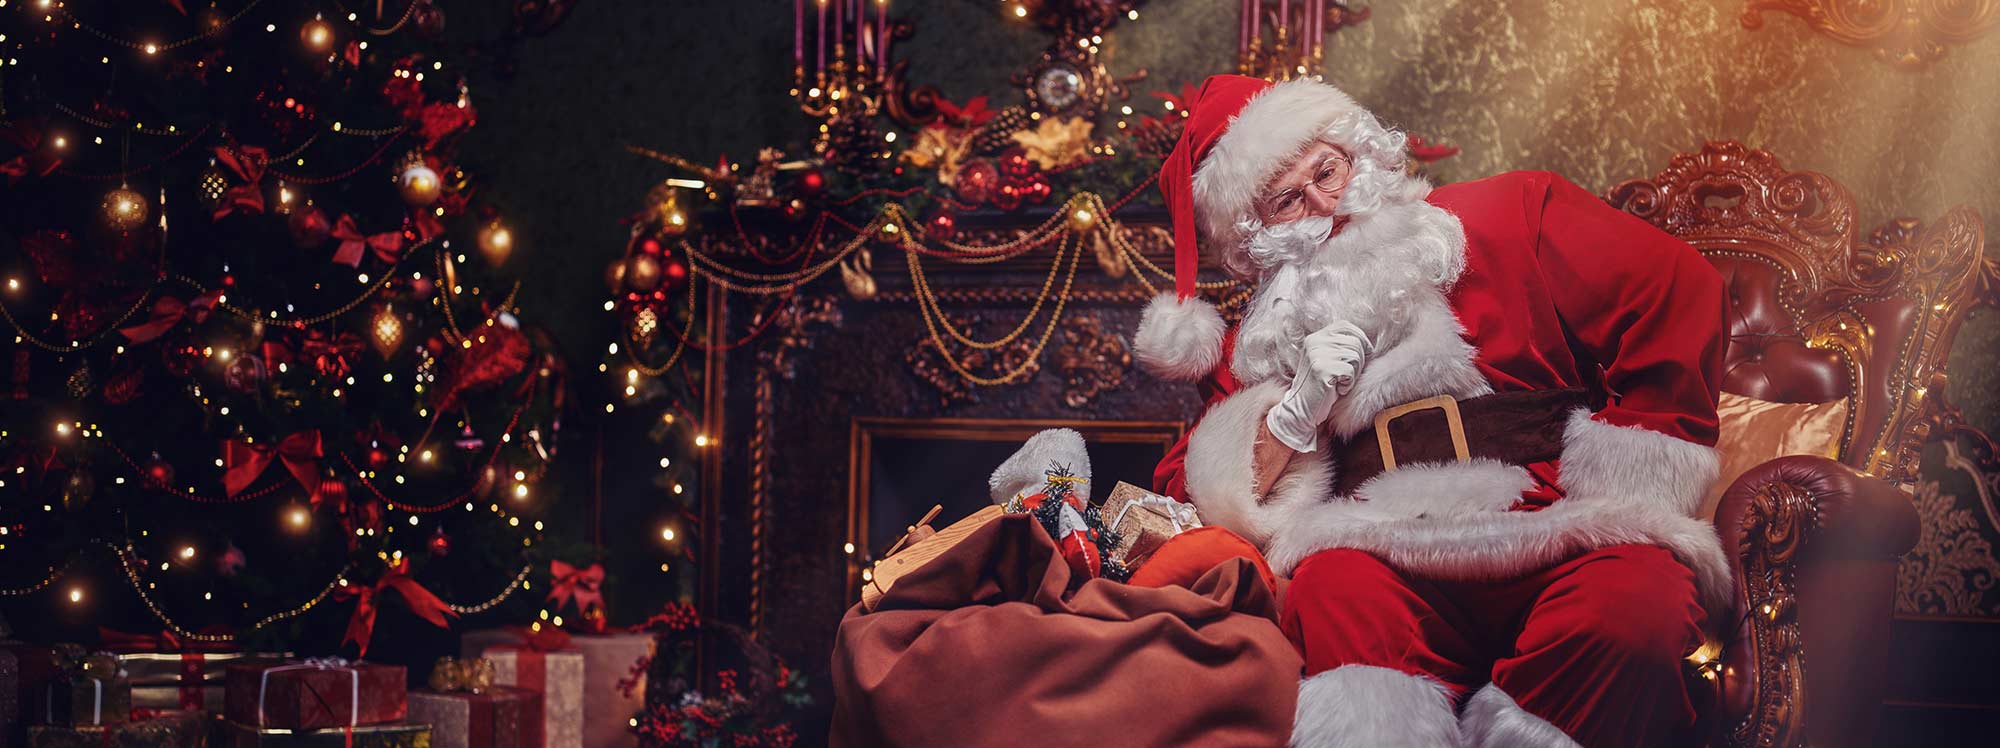 ¿Por qué Santa Claus entra por la chimenea?